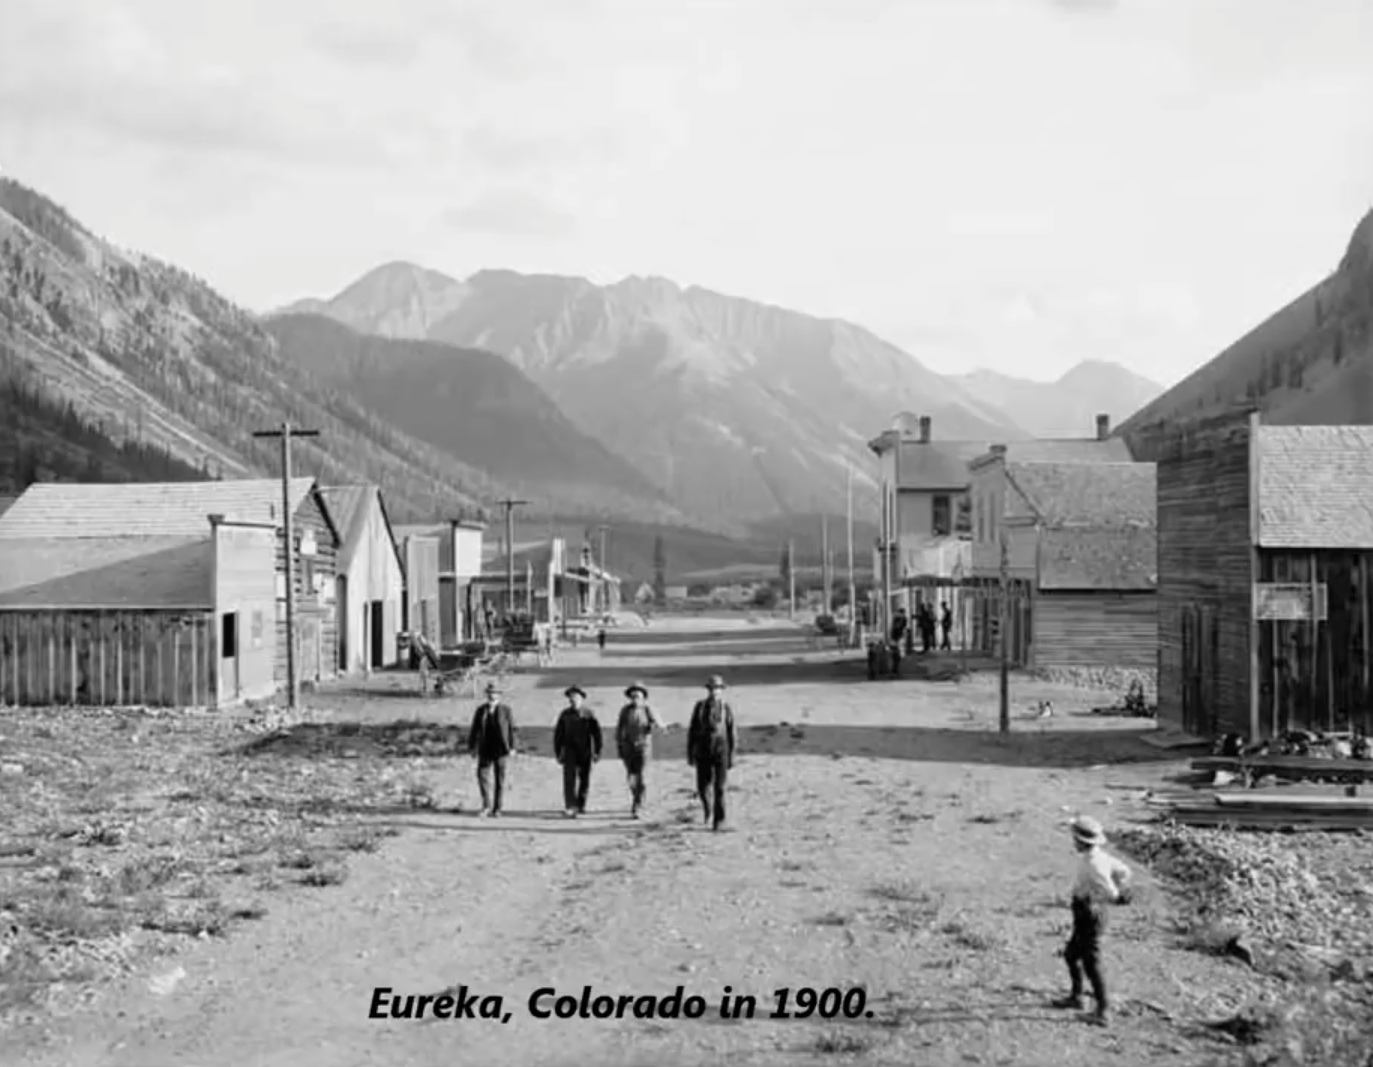 eureka colorado - Eureka, Colorado in 1900.